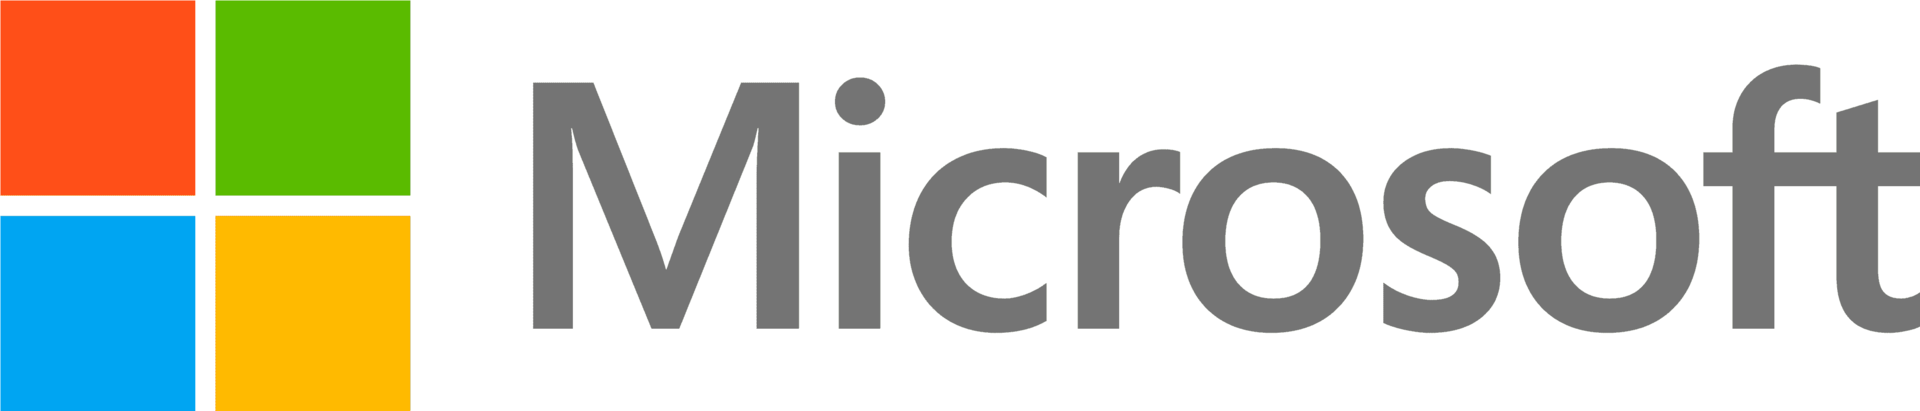 Microsoft DG7GMGF0D7DC.0002 Software-Lizenz/-Upgrade 1 Lizenz(en) (DG7GMGF0D7DC.0002)